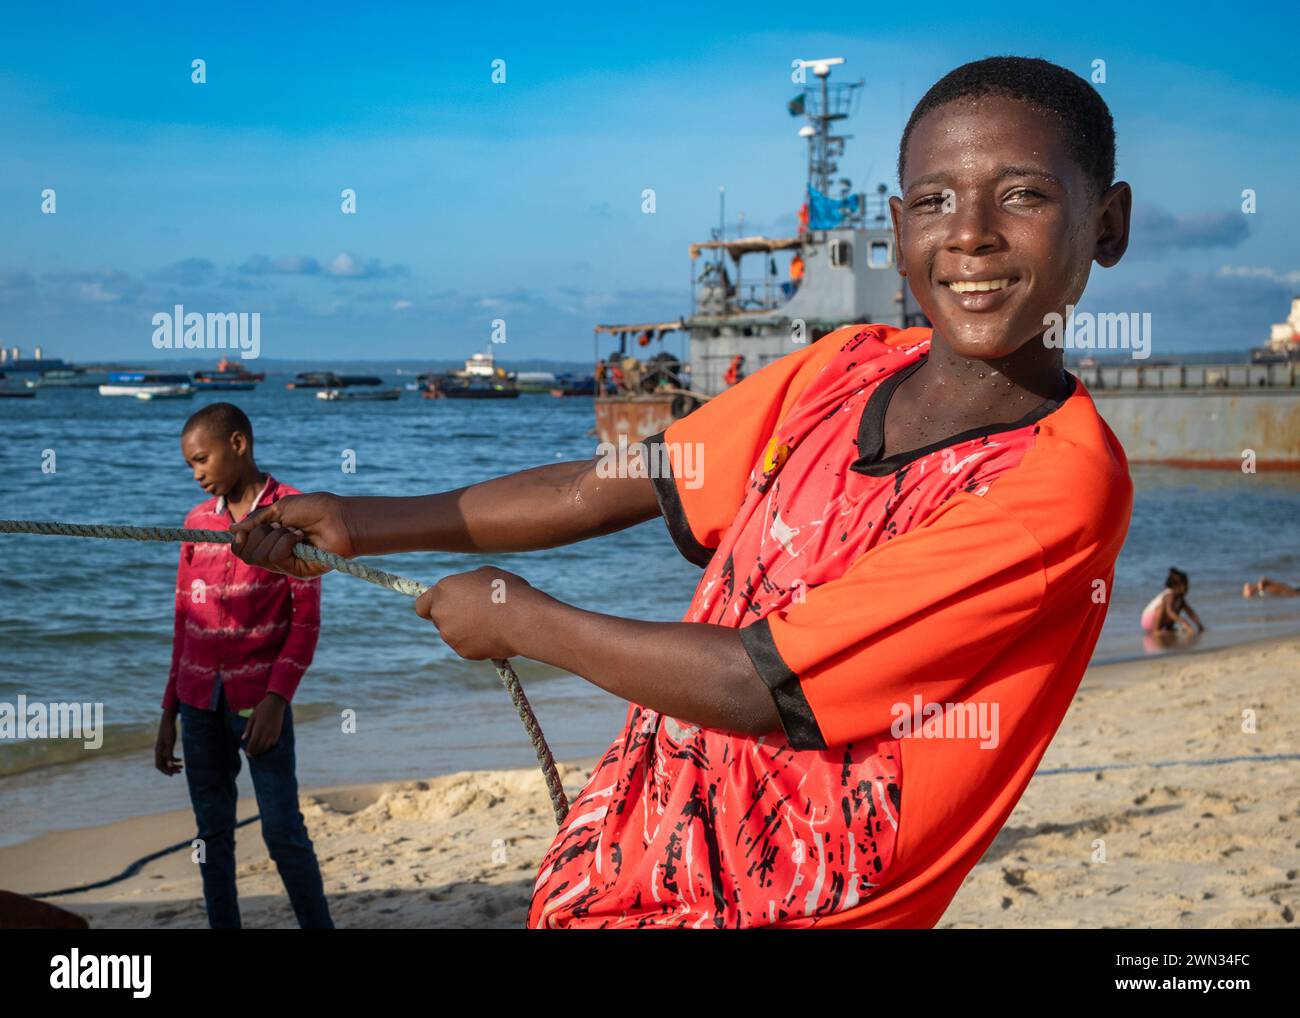 Un jeune garçon aide à transporter un bateau sur la plage de Stone Town, Zanzibar, Tanzanie. Banque D'Images